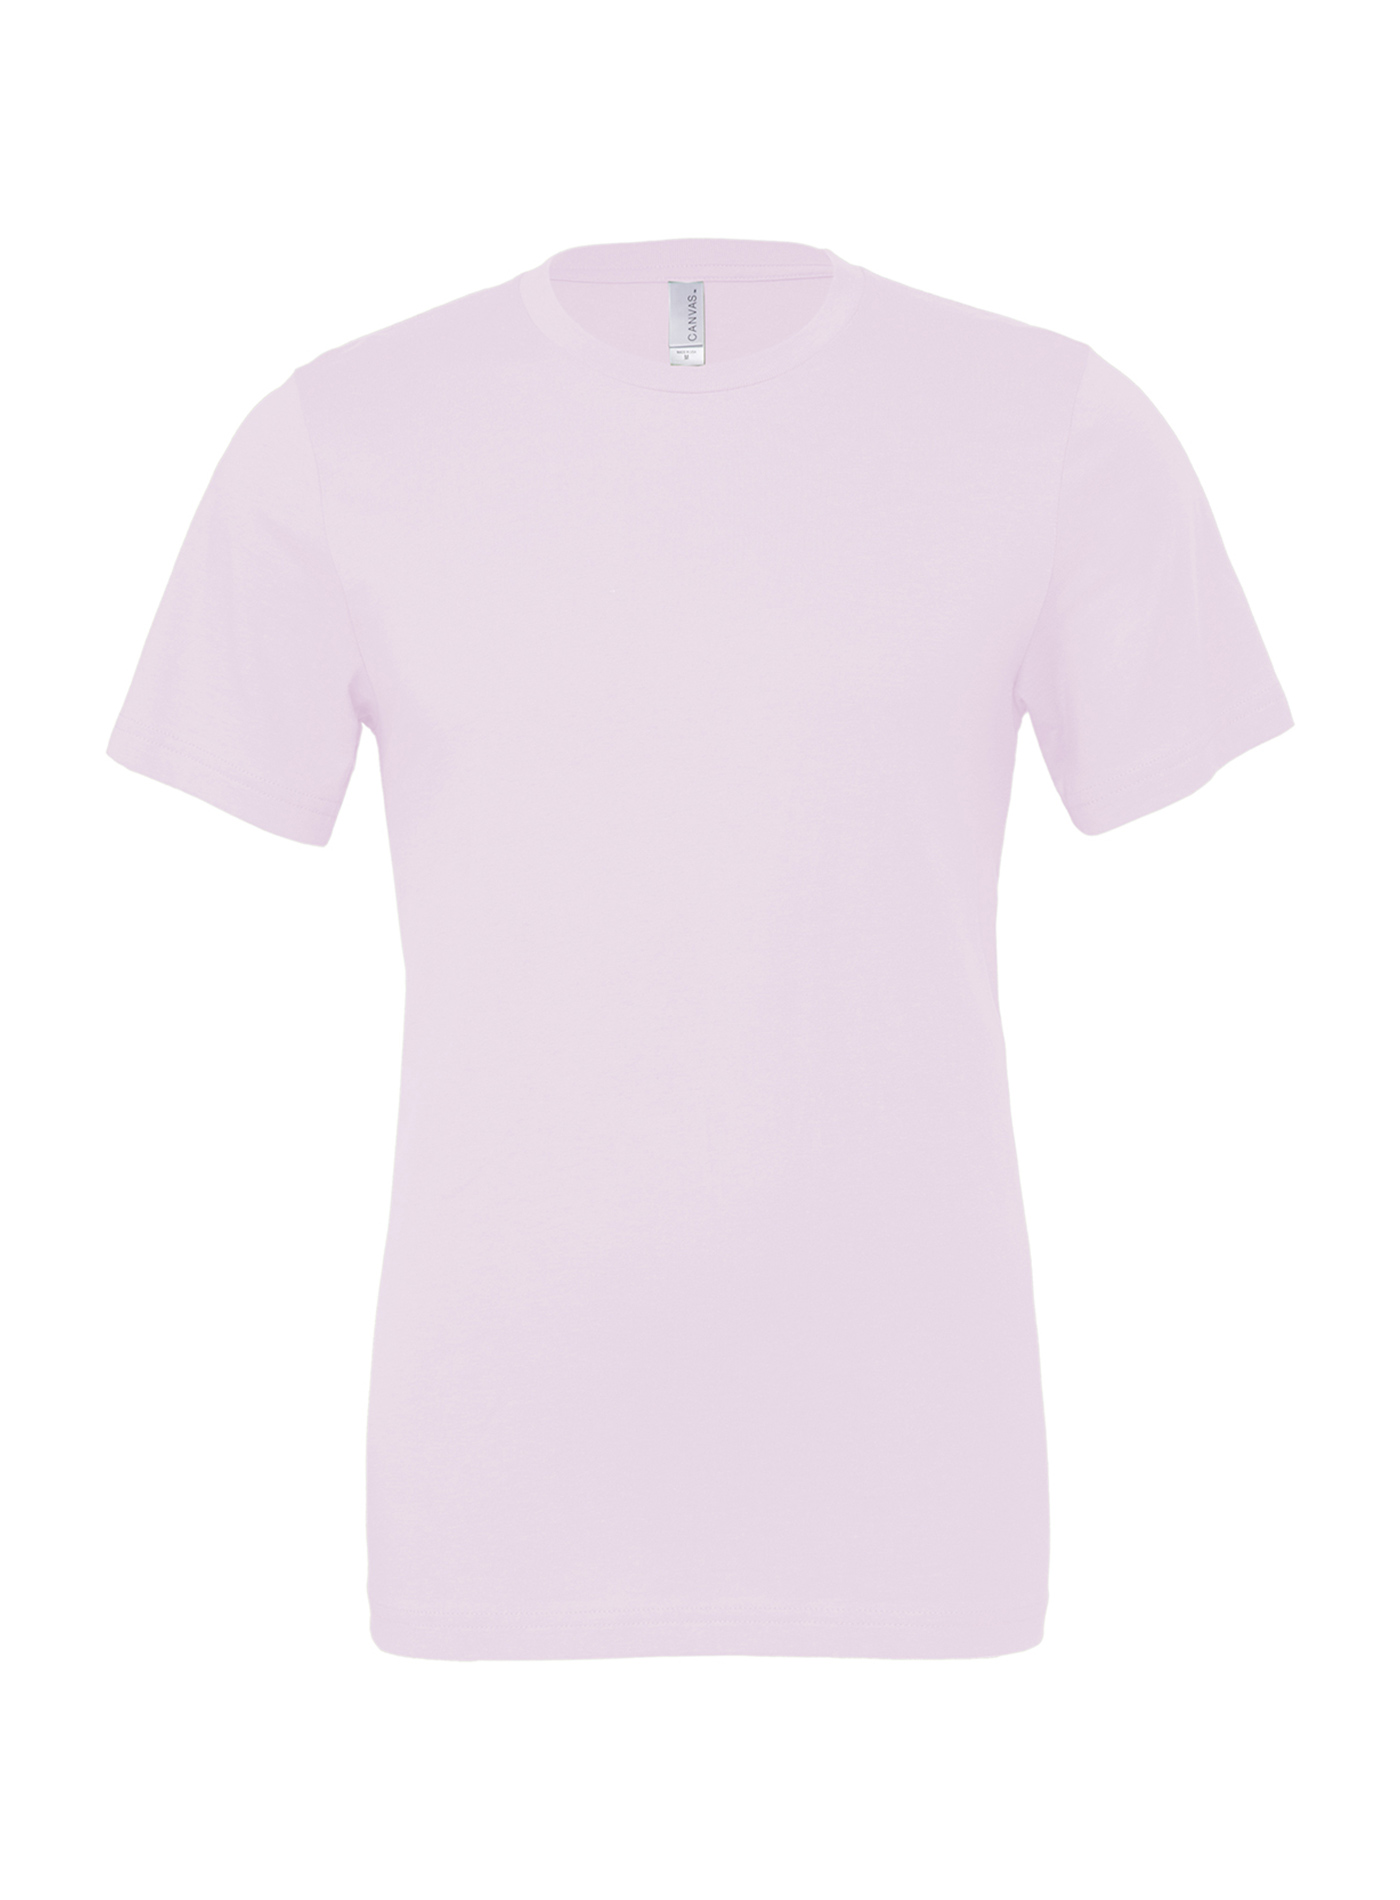 Unisex tričko Bella + Canvas Jersey - Bledě růžová M